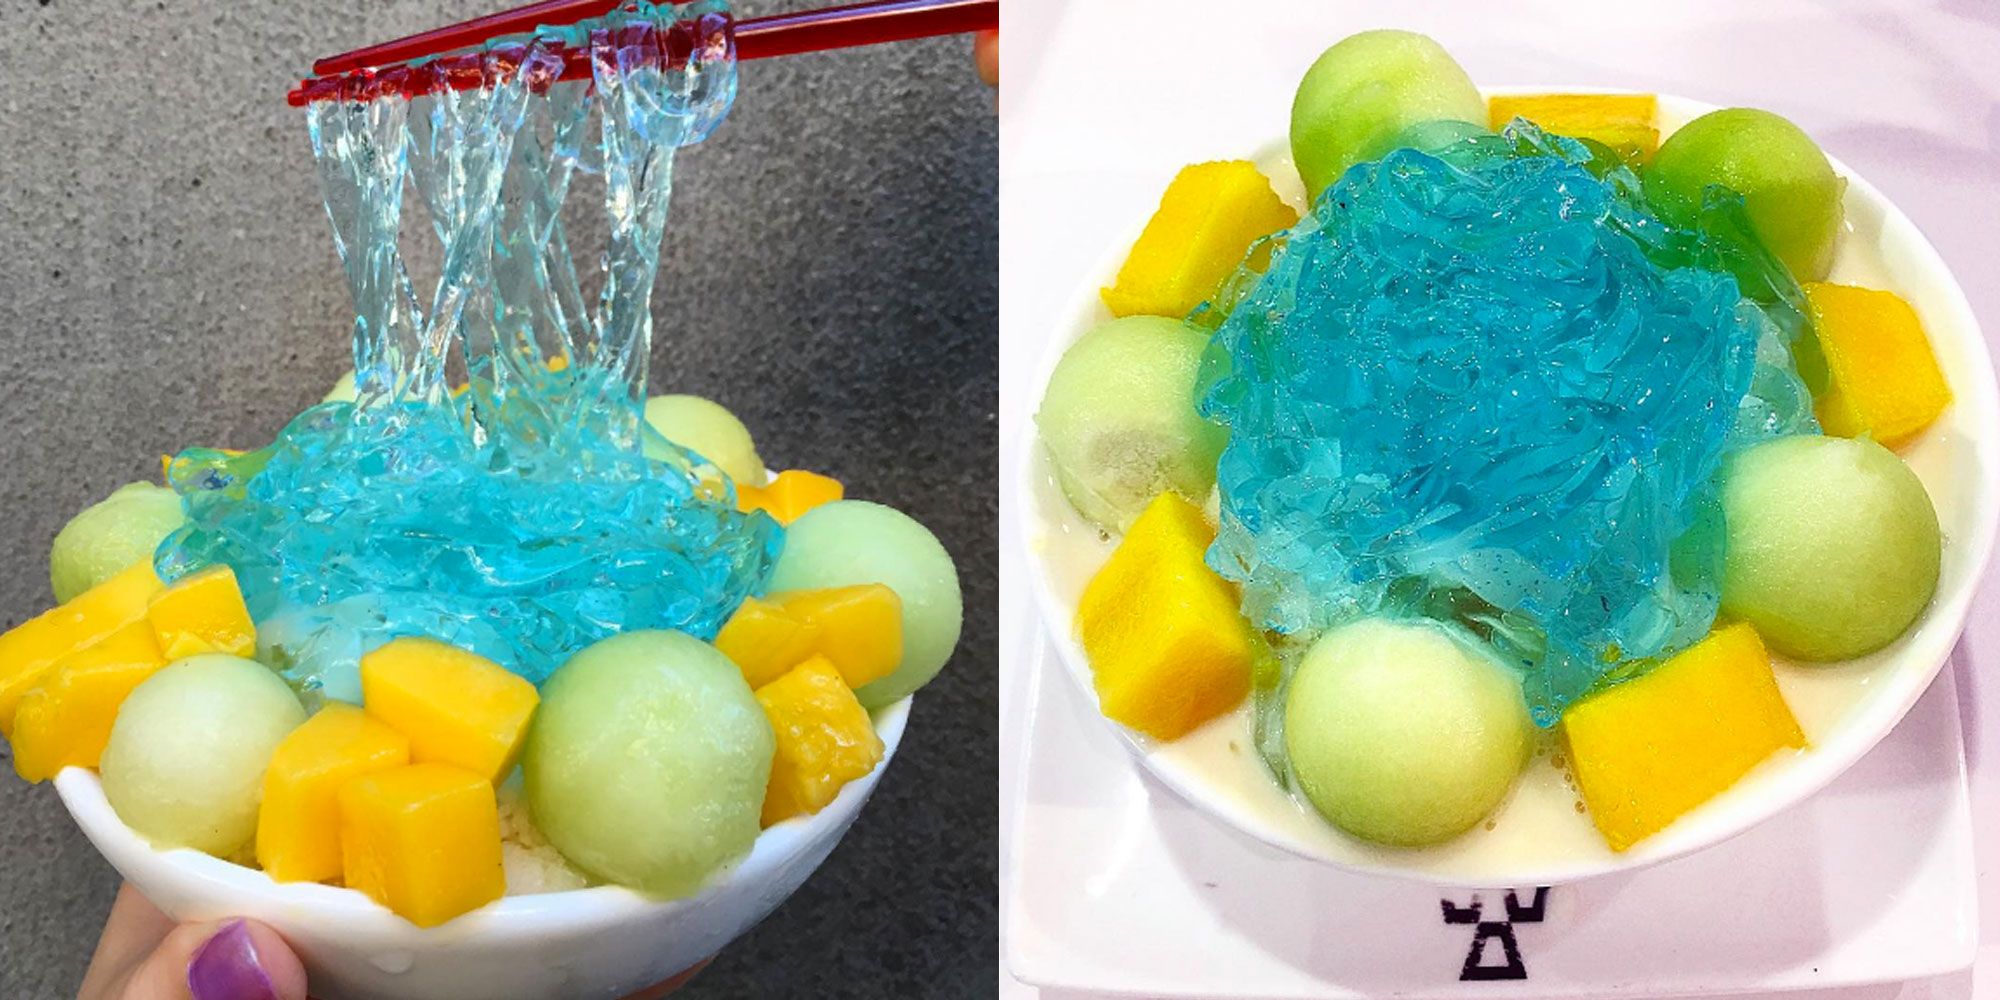 Resultado de imagen para Neon blue coconut jelly dessert noodles el helado